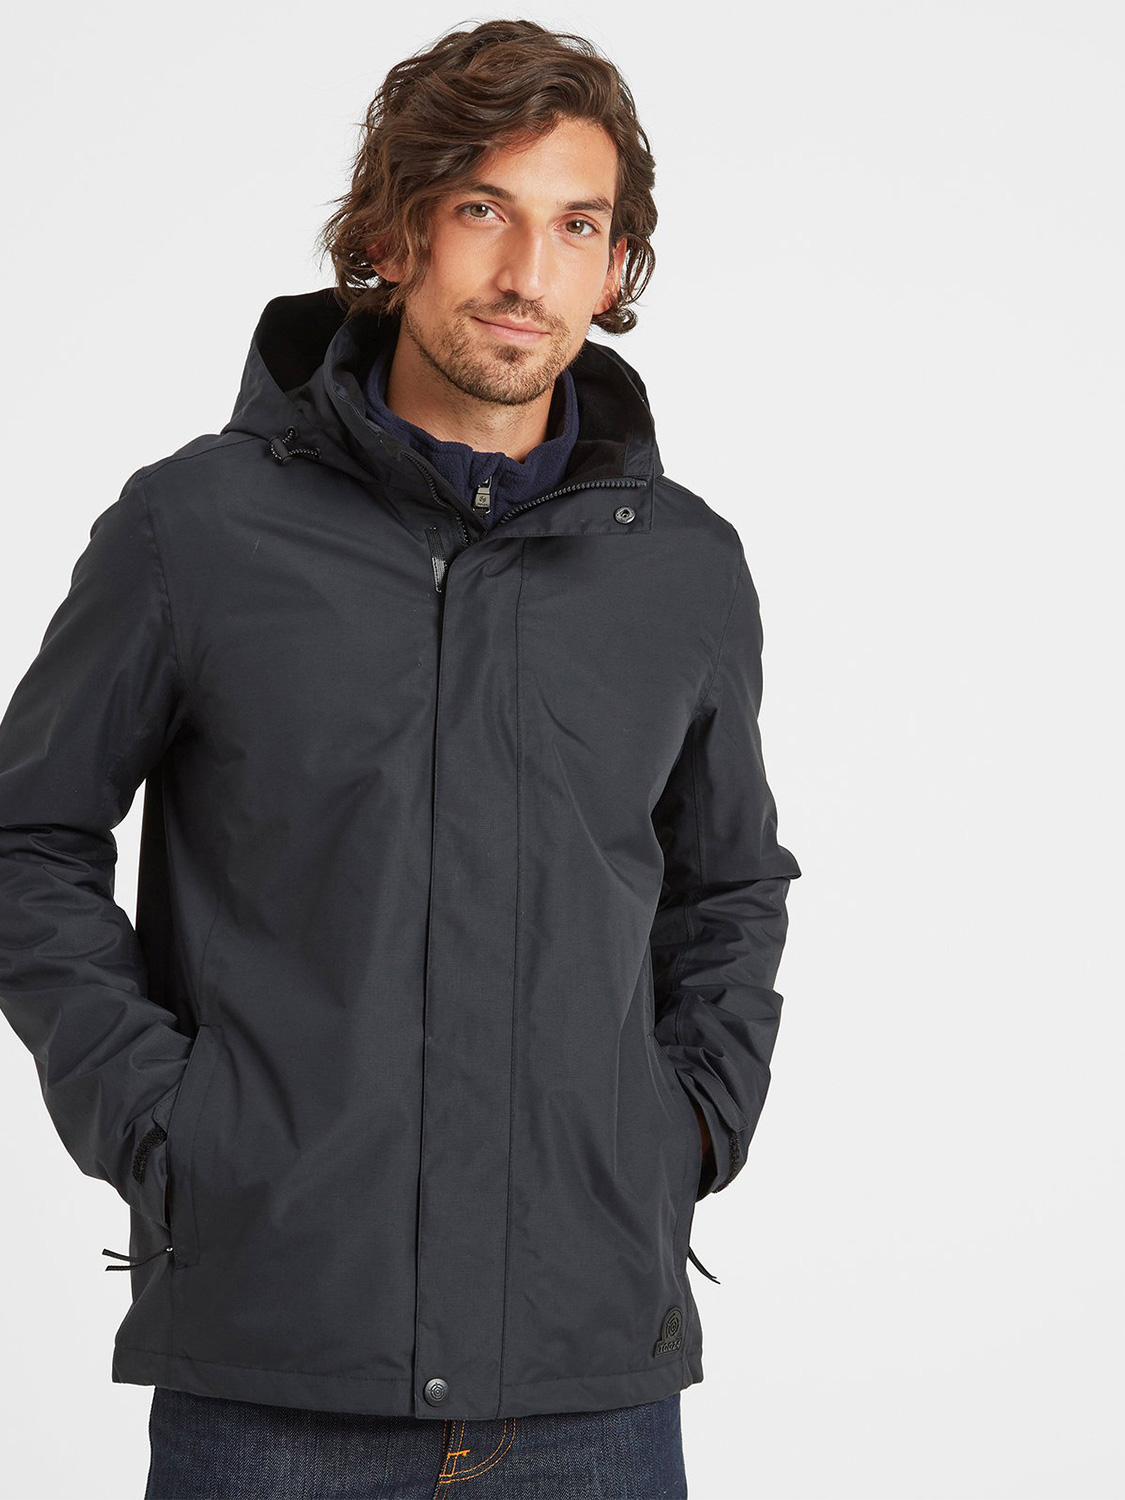 Airton Waterproof Jacket - Size: Large Men’s Black Tog24